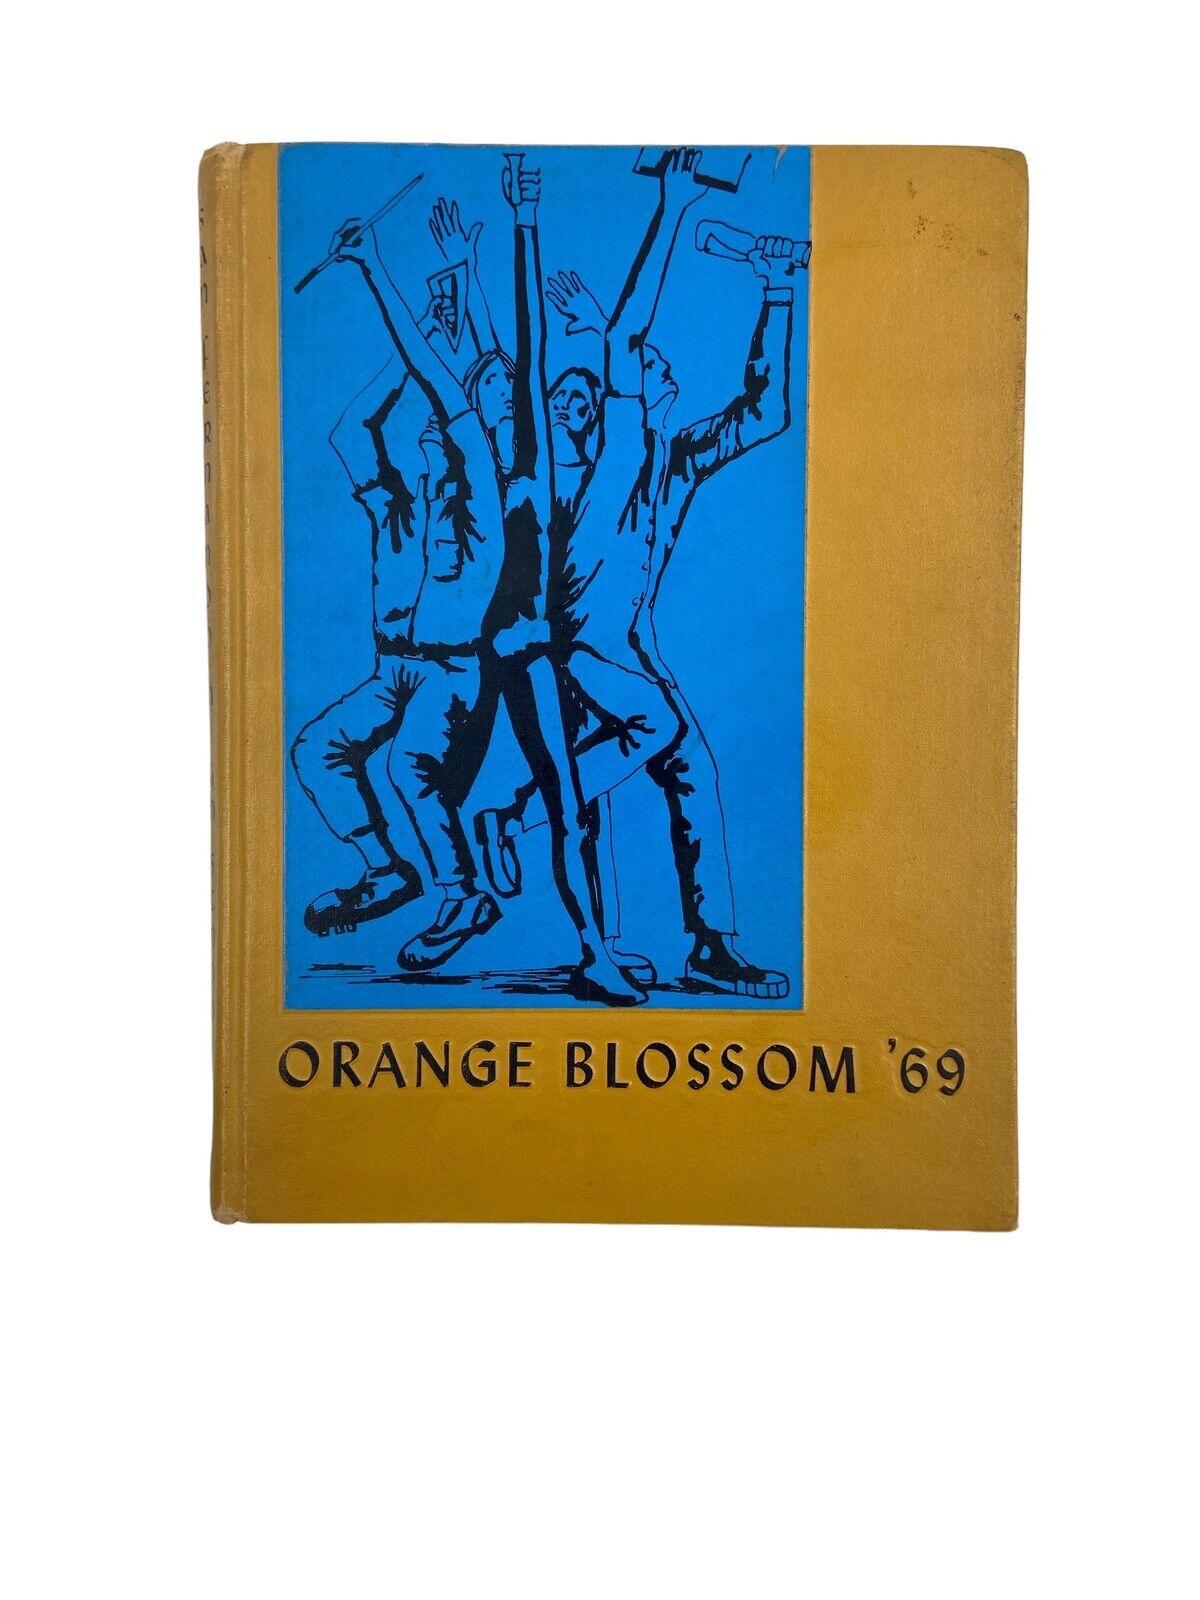 1969 San Fernando High School Yearbook, Orange Blossom, San Fernando, CA